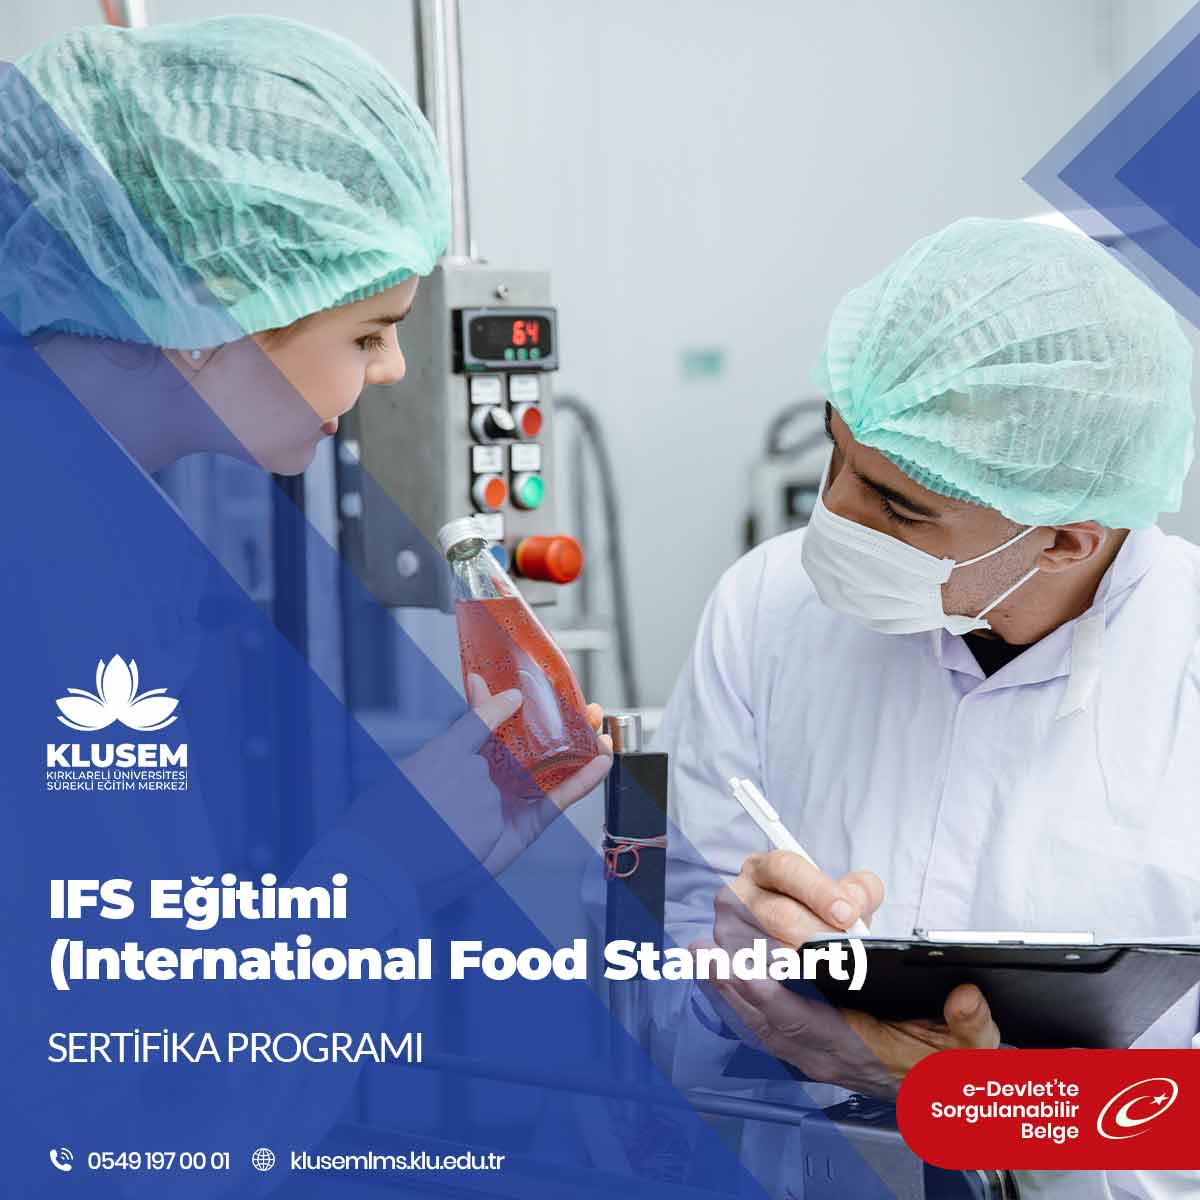 IFS standardı, gıda güvenliğinin ve üreticilerin kalite düzeylerinin eşit kontrolüne yaramaktadır.